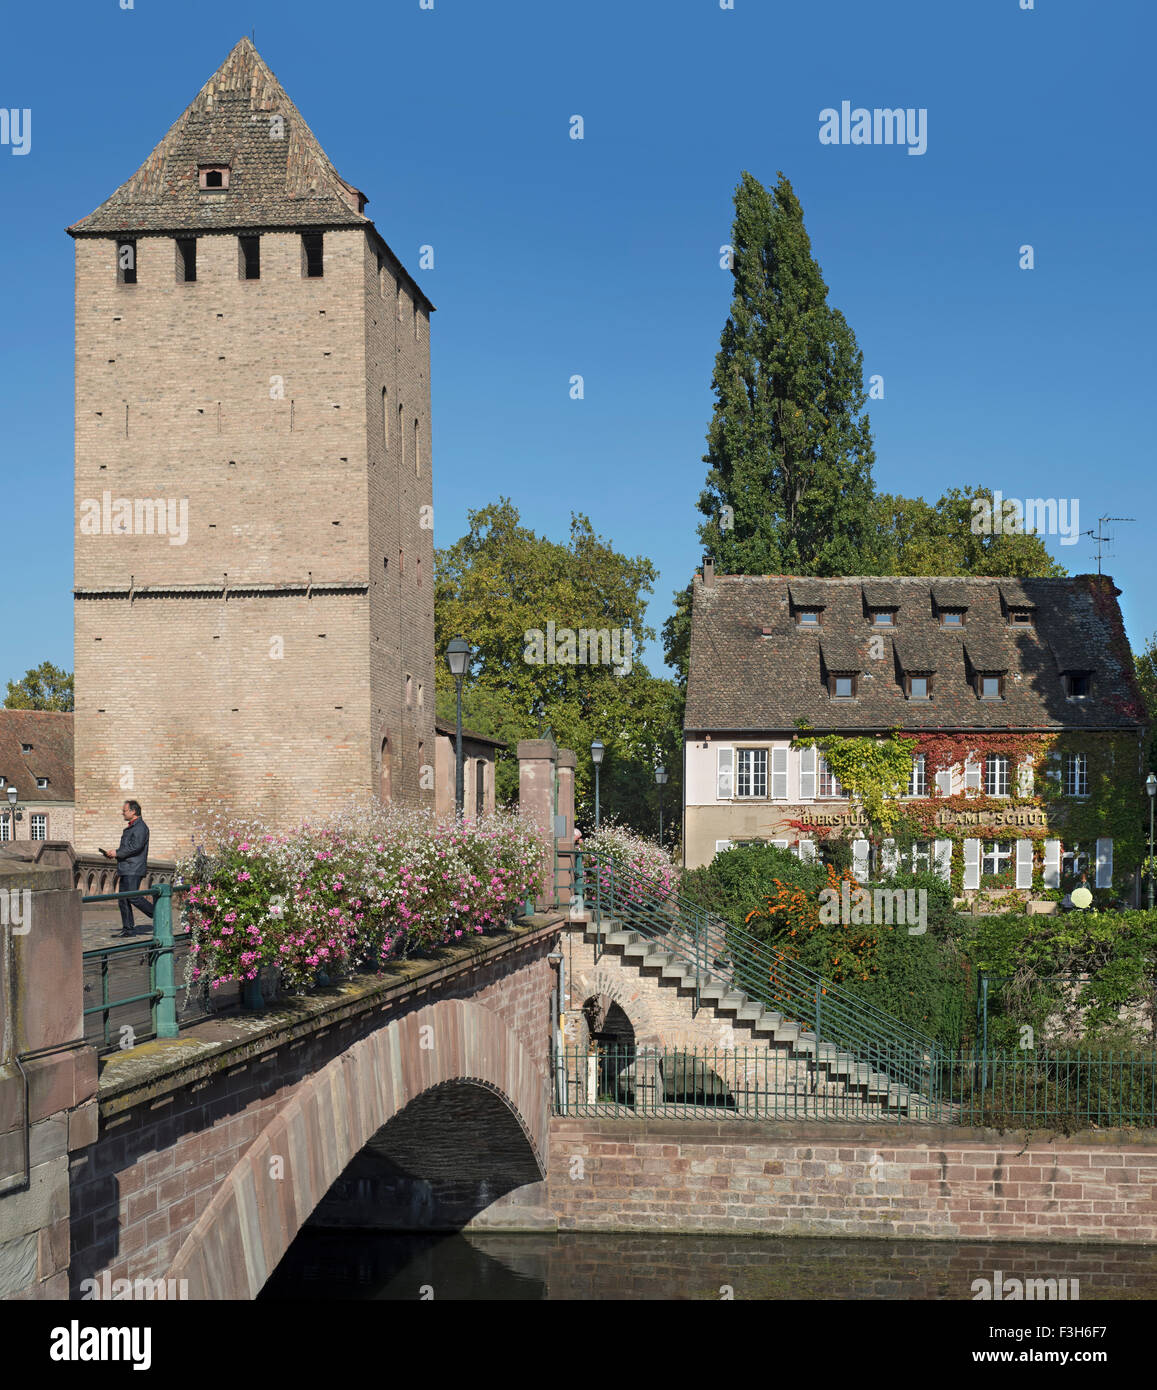 L'une des quatre tours de l'époque médiévale Ponts Couverts sur l'Ill dans le quartier de la Petite France à Strasbourg, Alsace, France Banque D'Images